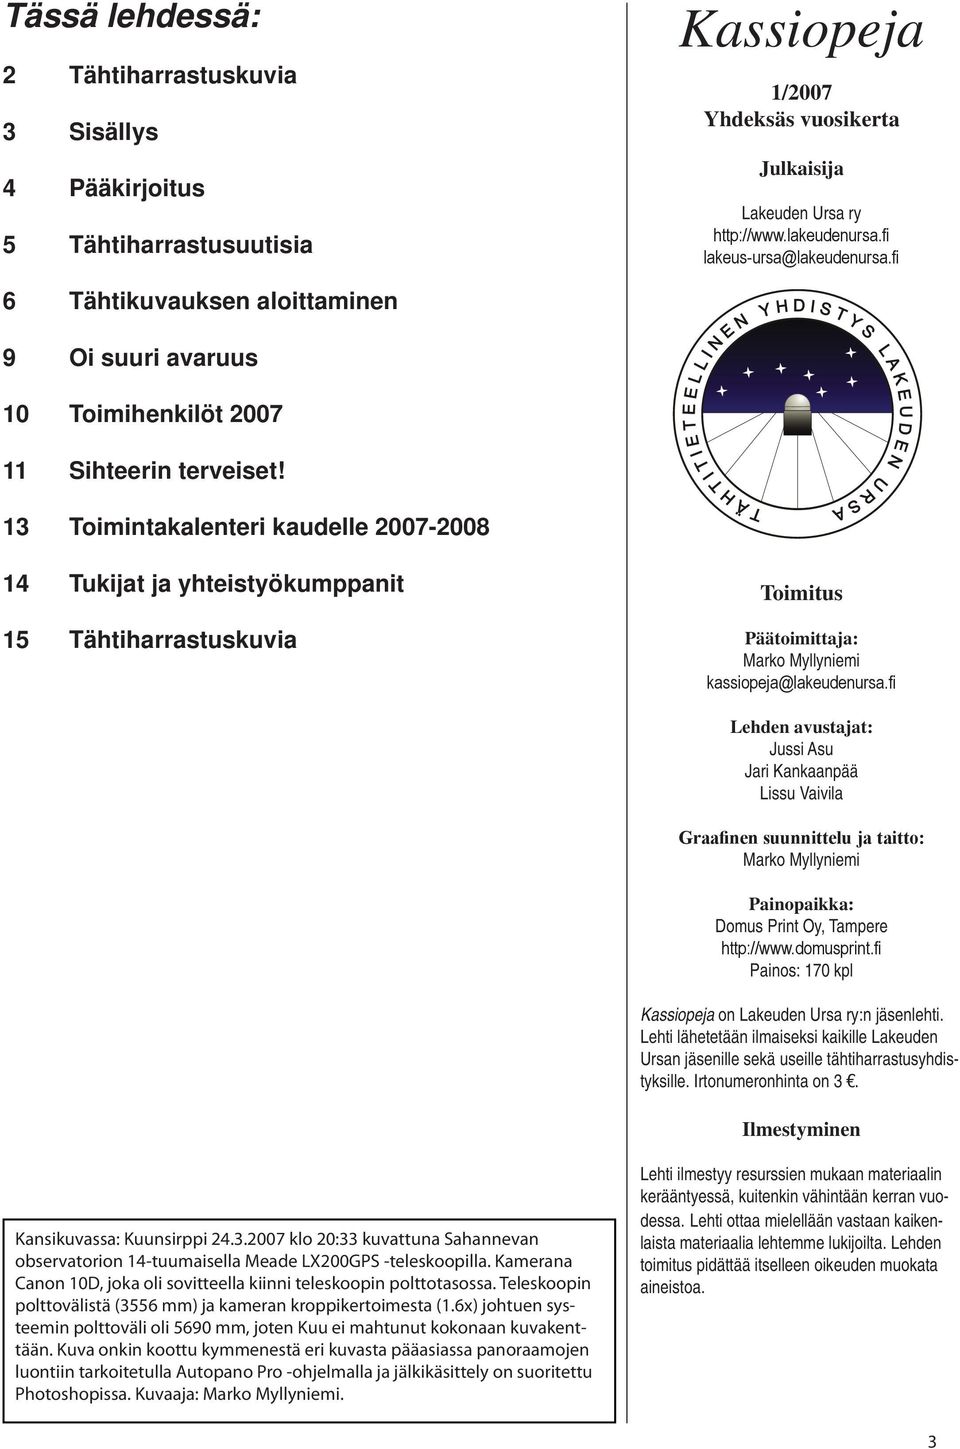 13 Toimintakalenteri kaudelle 2007-2008 14 Tukijat ja yhteistyökumppanit 15 Tähtiharrastuskuvia Toimitus Päätoimittaja: Marko Myllyniemi kassiopeja@lakeudenursa.